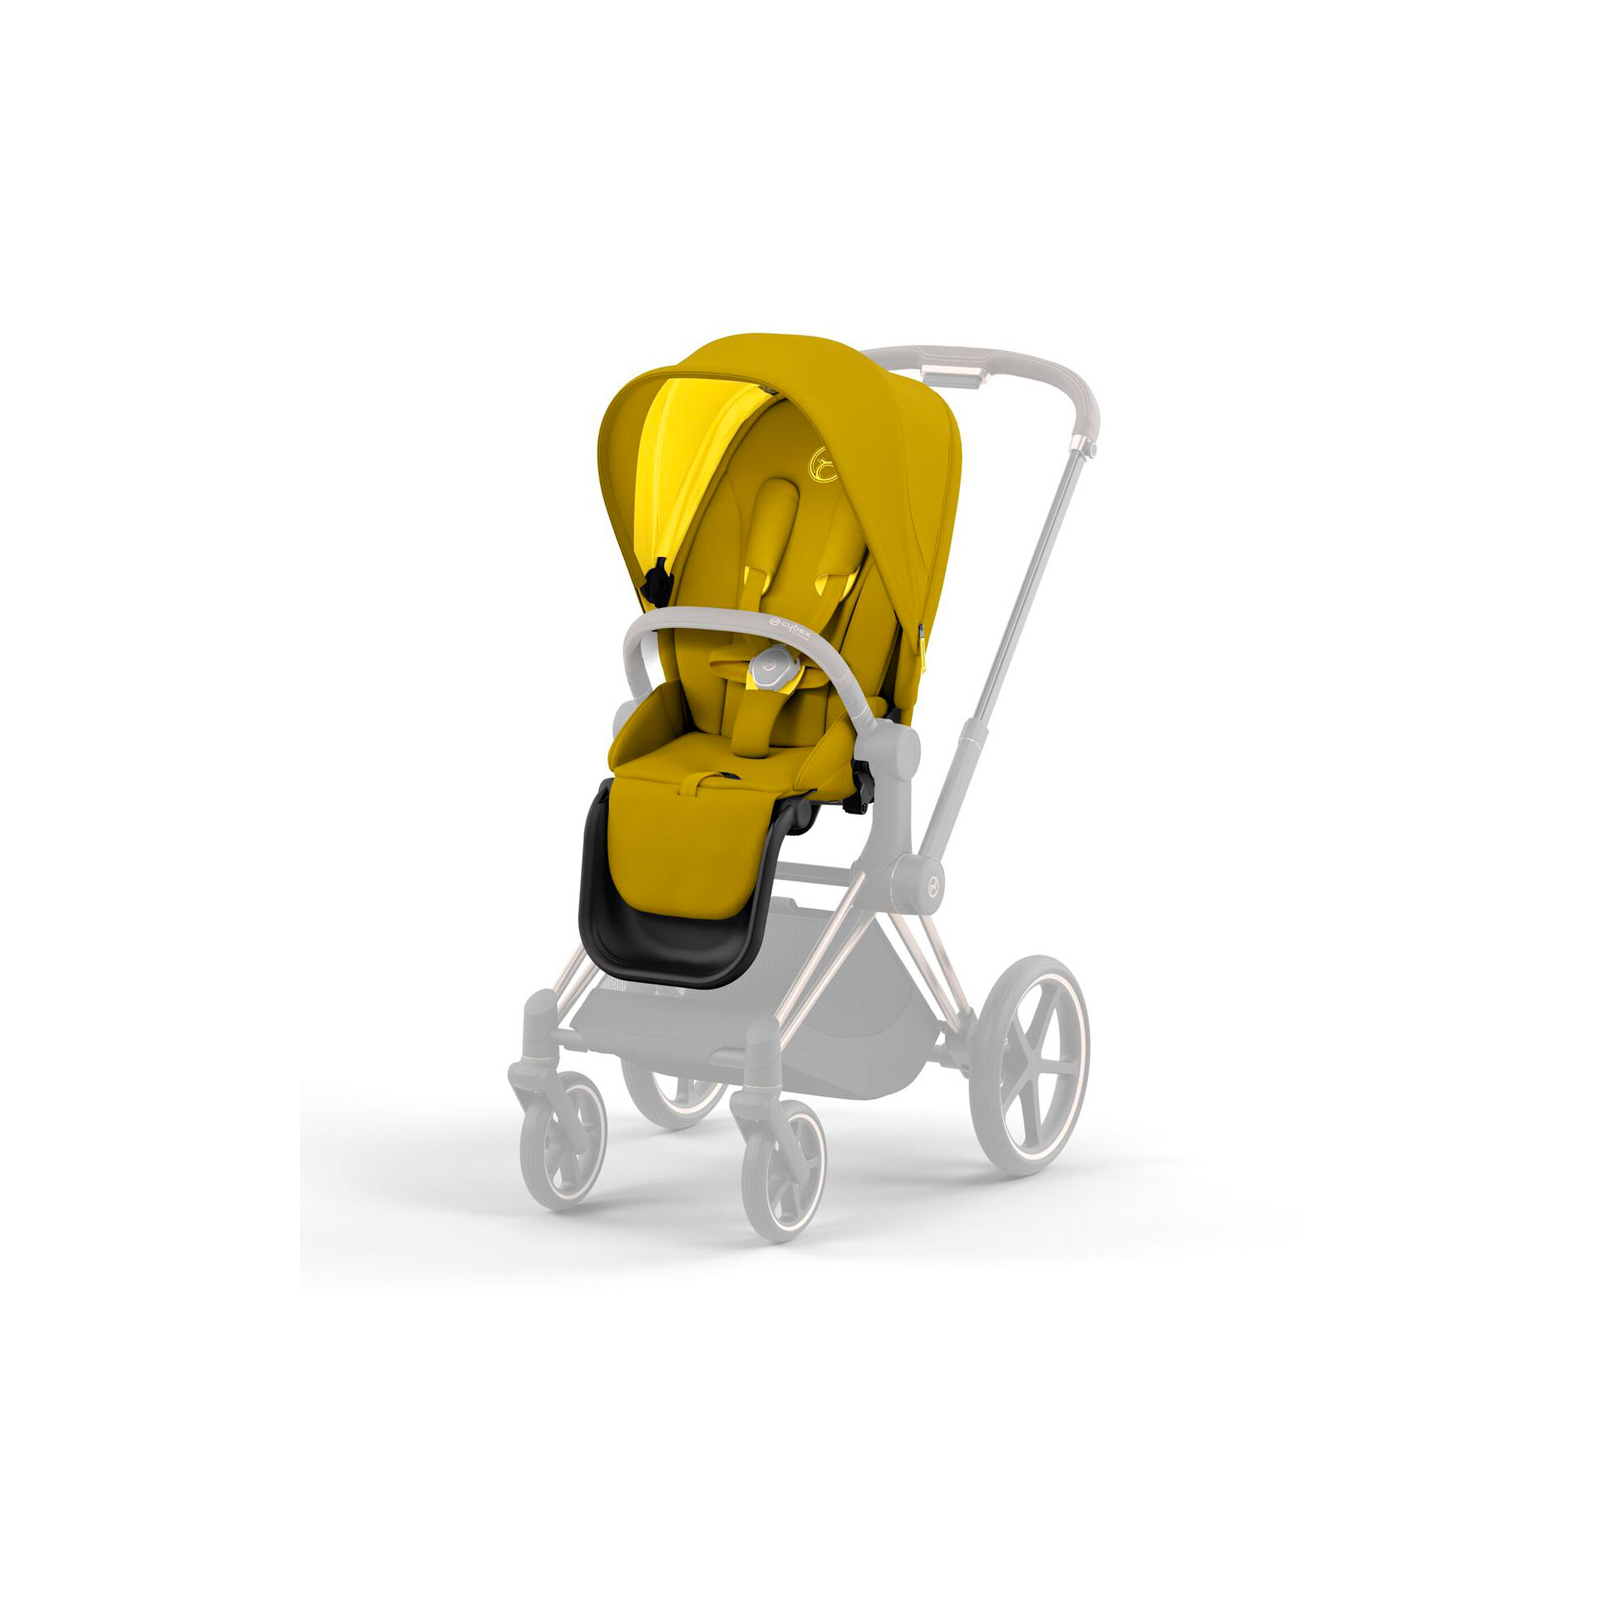 Набор текстиля для коляски Cybex Priam Mustard Yellow (521002399)